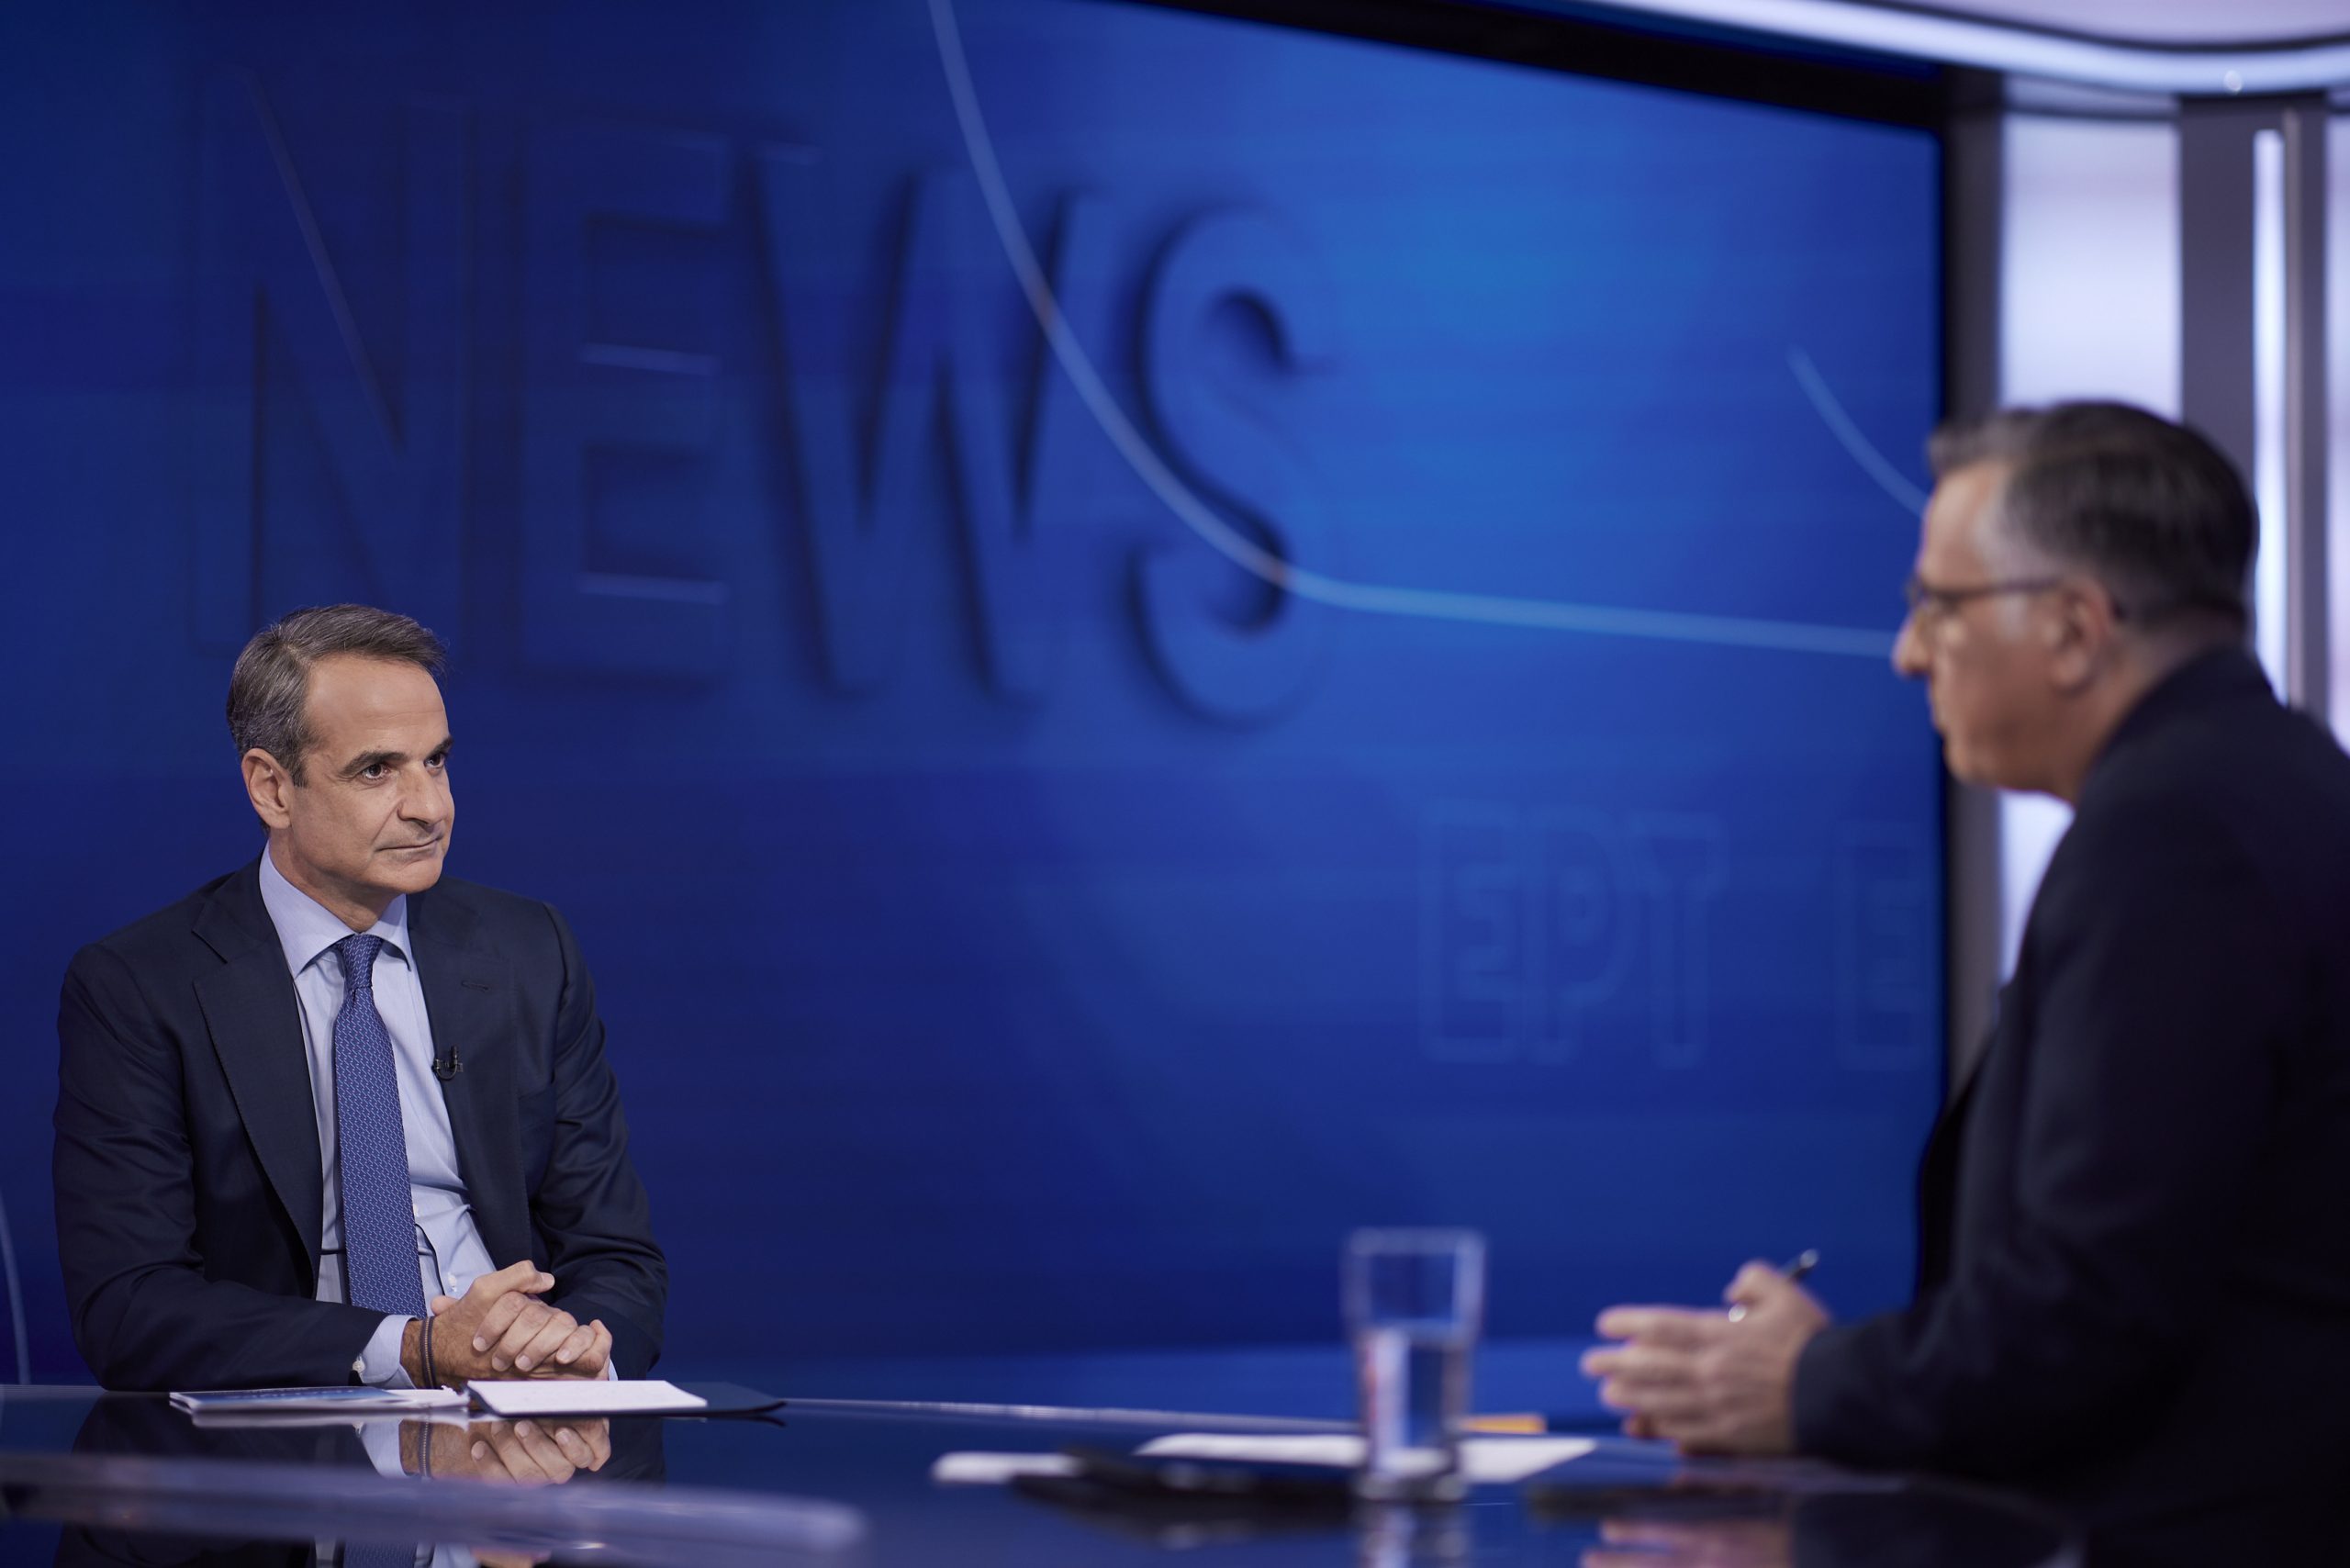 Ο πρόεδρος της Νέας Δημοκρατίας Κυριάκος Μητσοτάκης παραχωρεί συνέντευξη στο κεντρικό δελτίο ειδήσεων της ΕΡΤ 